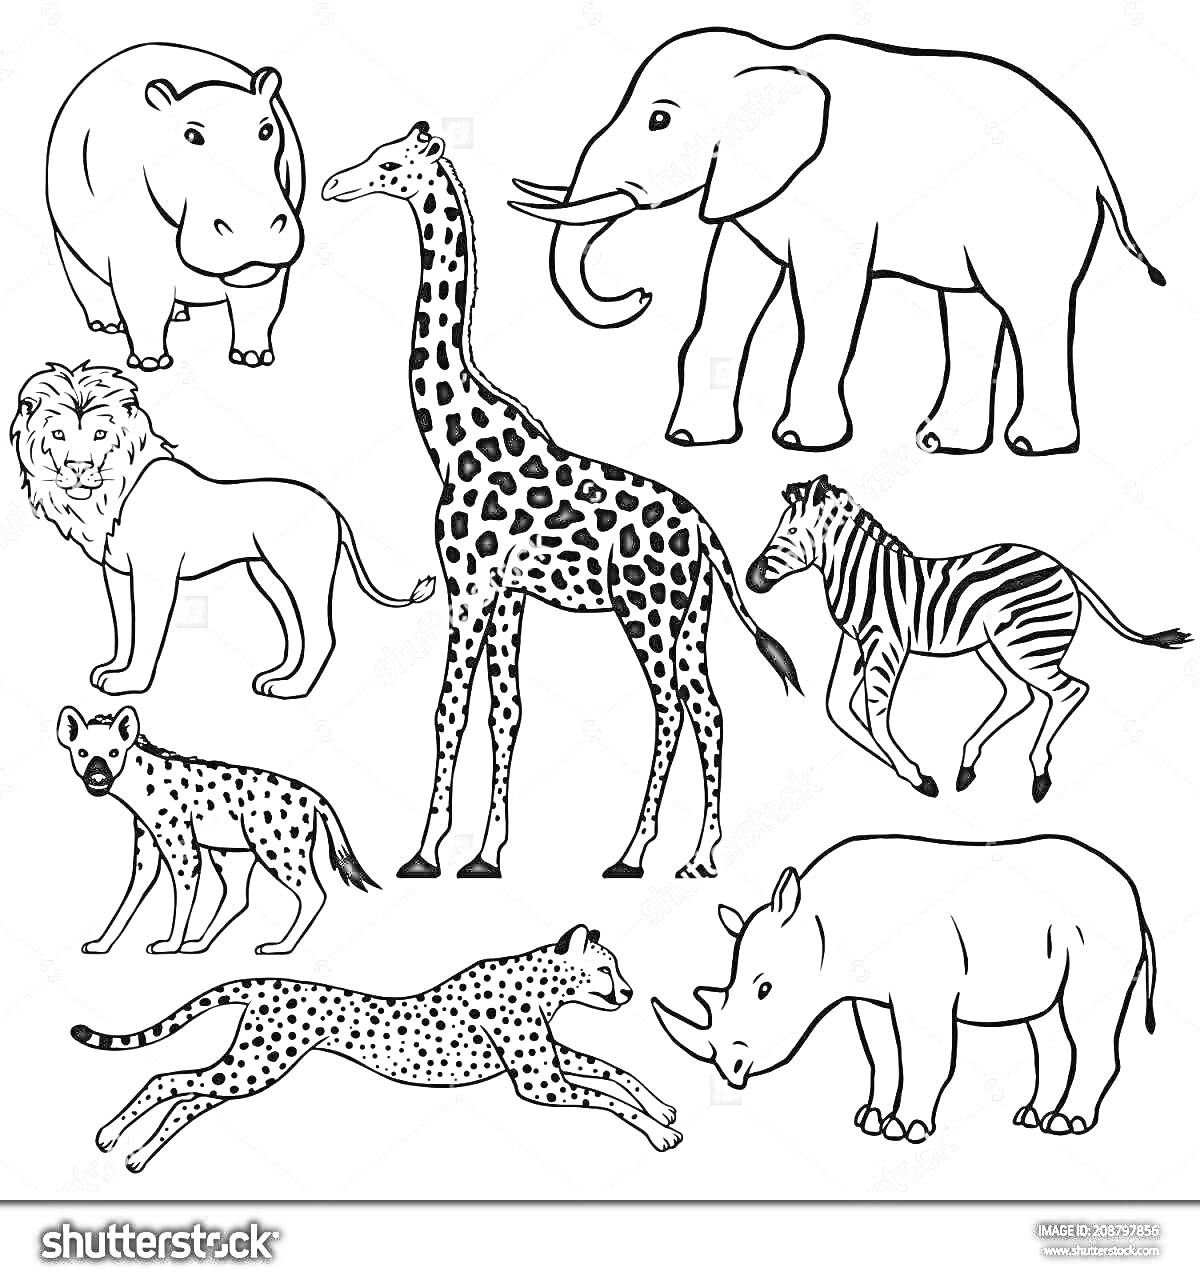 Раскраска Бегемот, слон, жираф, зебра, лев, гиена, носорог, гепард